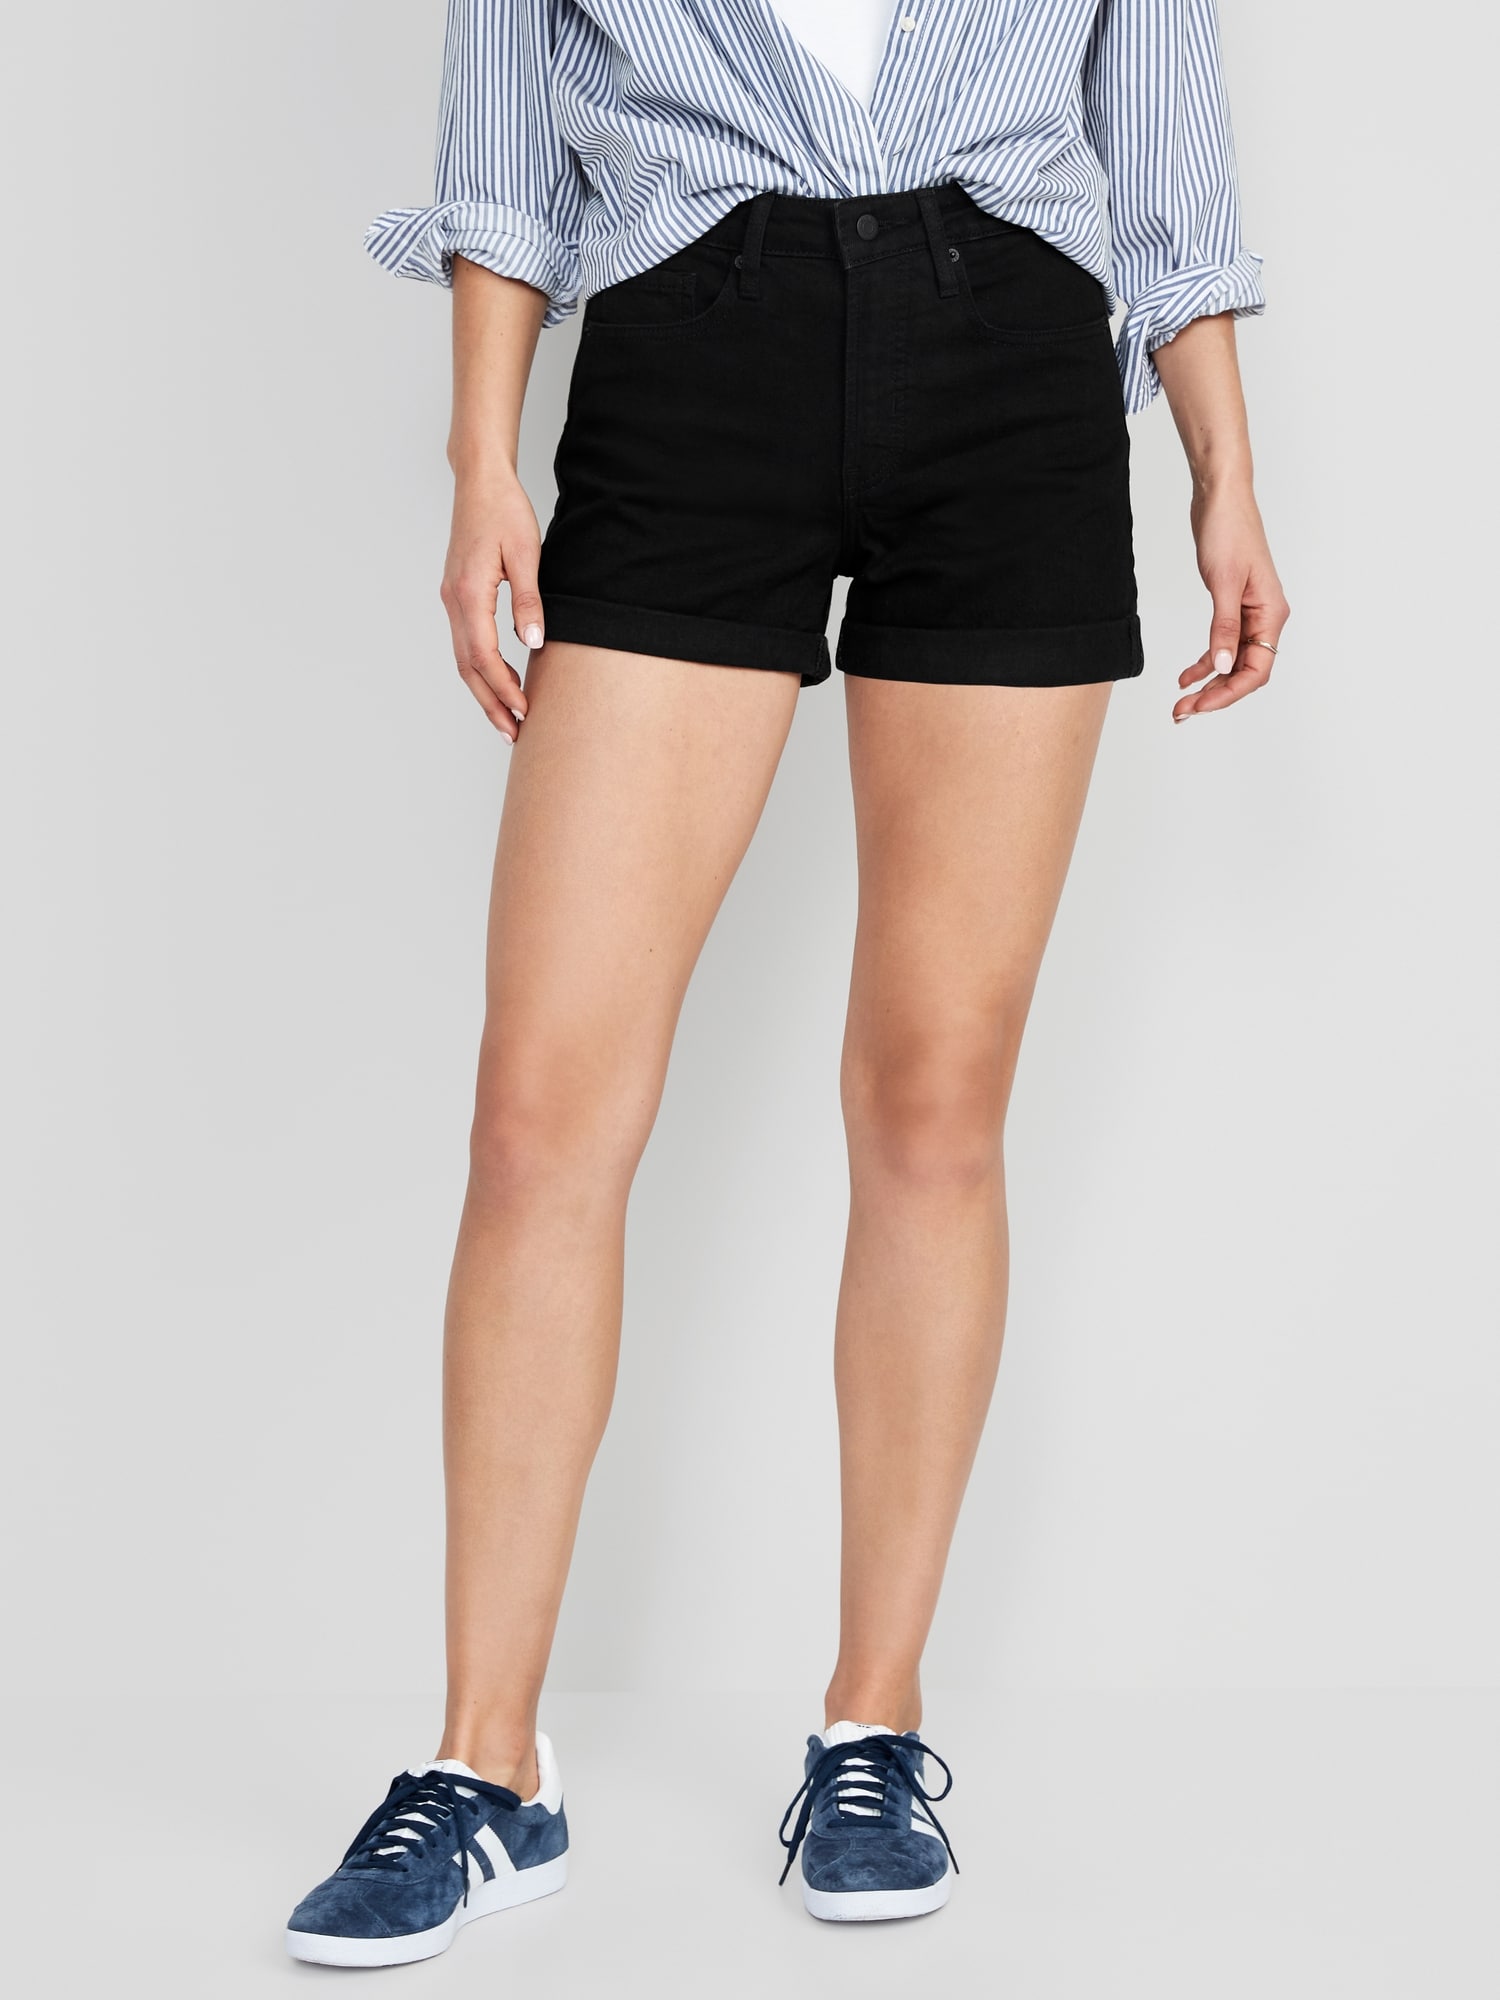 overførsel tavle Besættelse High-Waisted OG Cuffed Black Jean Shorts for Women -- 3-inch inseam | Old  Navy